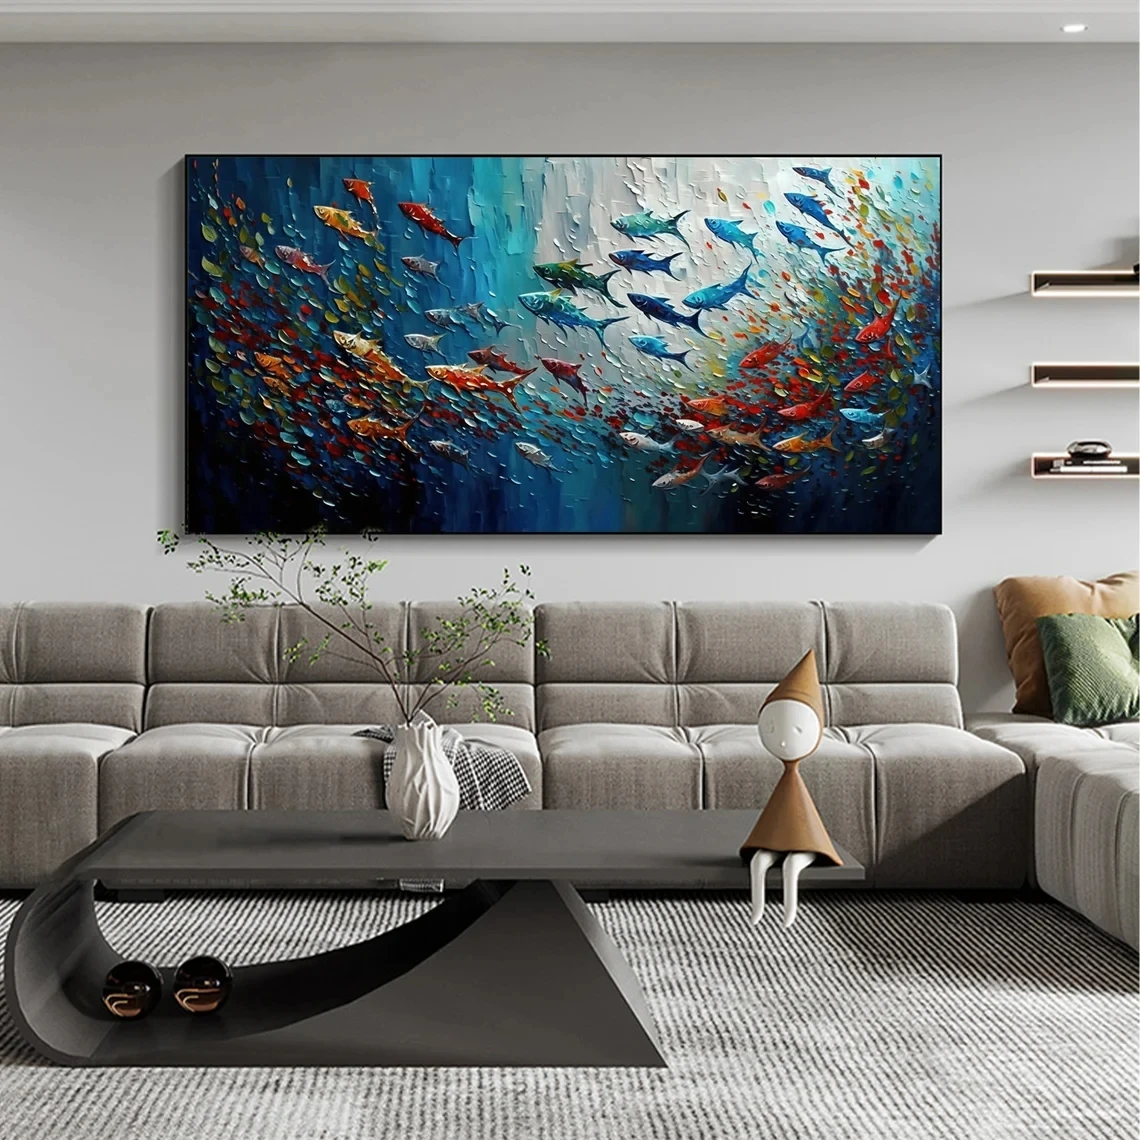 Pittura a olio di scuola di pesce dipinta a mano su tela, arte murale personalizzata, immagine astratta della pittura del mare blu, decorazione della casa del soggiorno